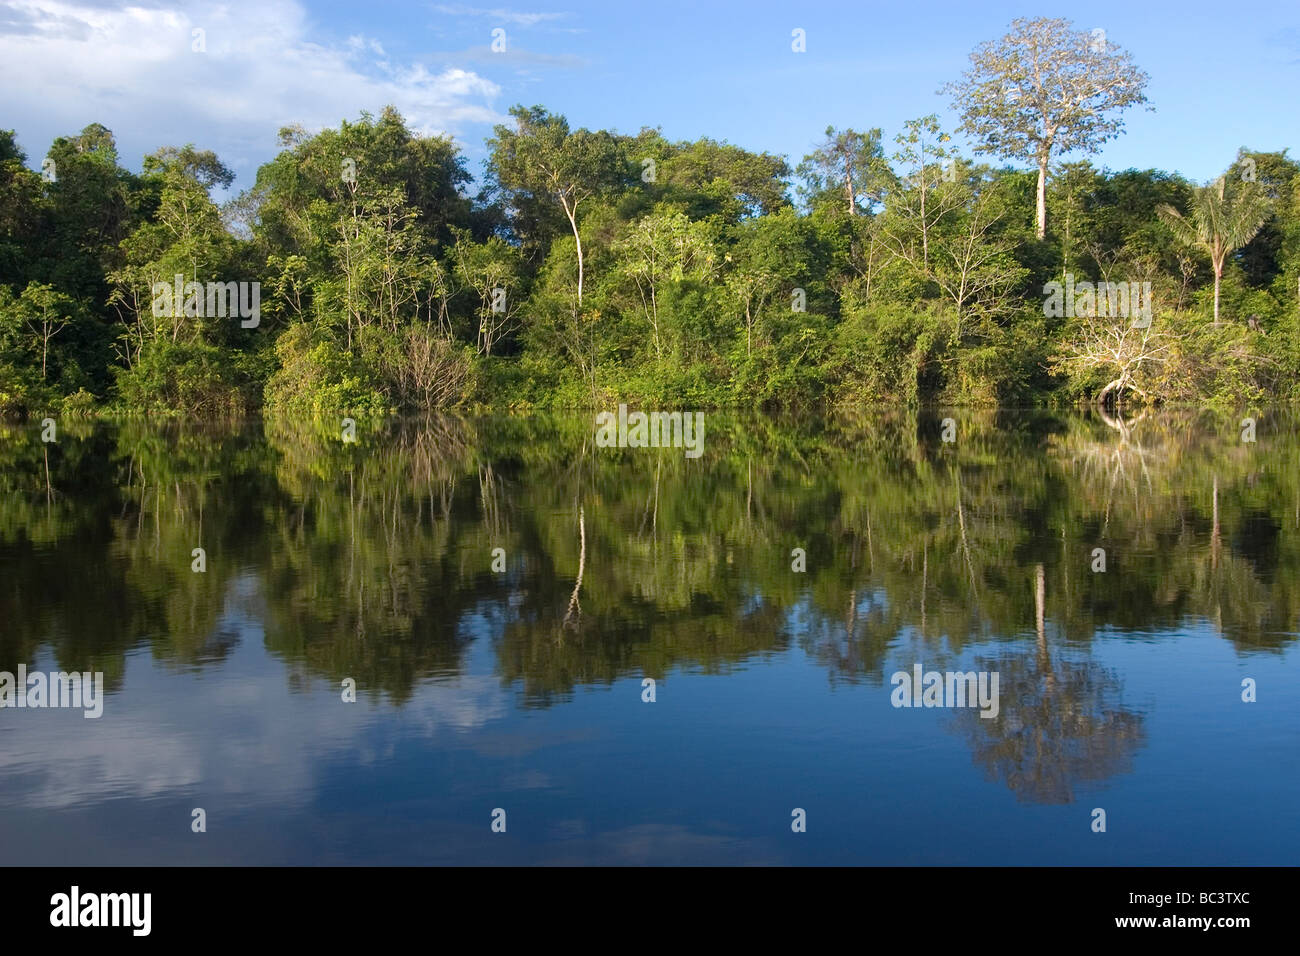 Les forêts tropicales inondées - Brésil Banque D'Images